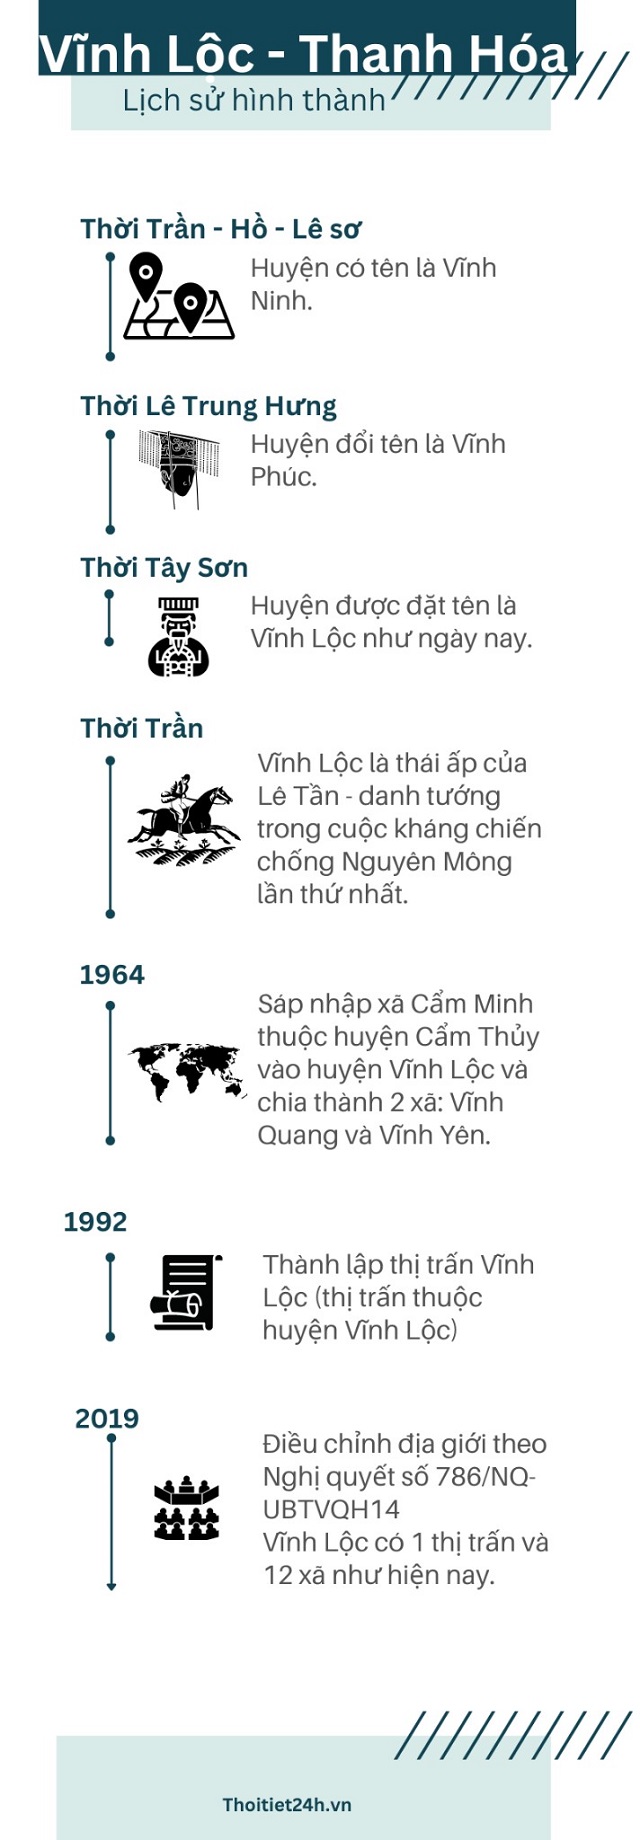 Lịch sử hình thành và phát triển huyện Vĩnh Lộc, Thanh Hóa